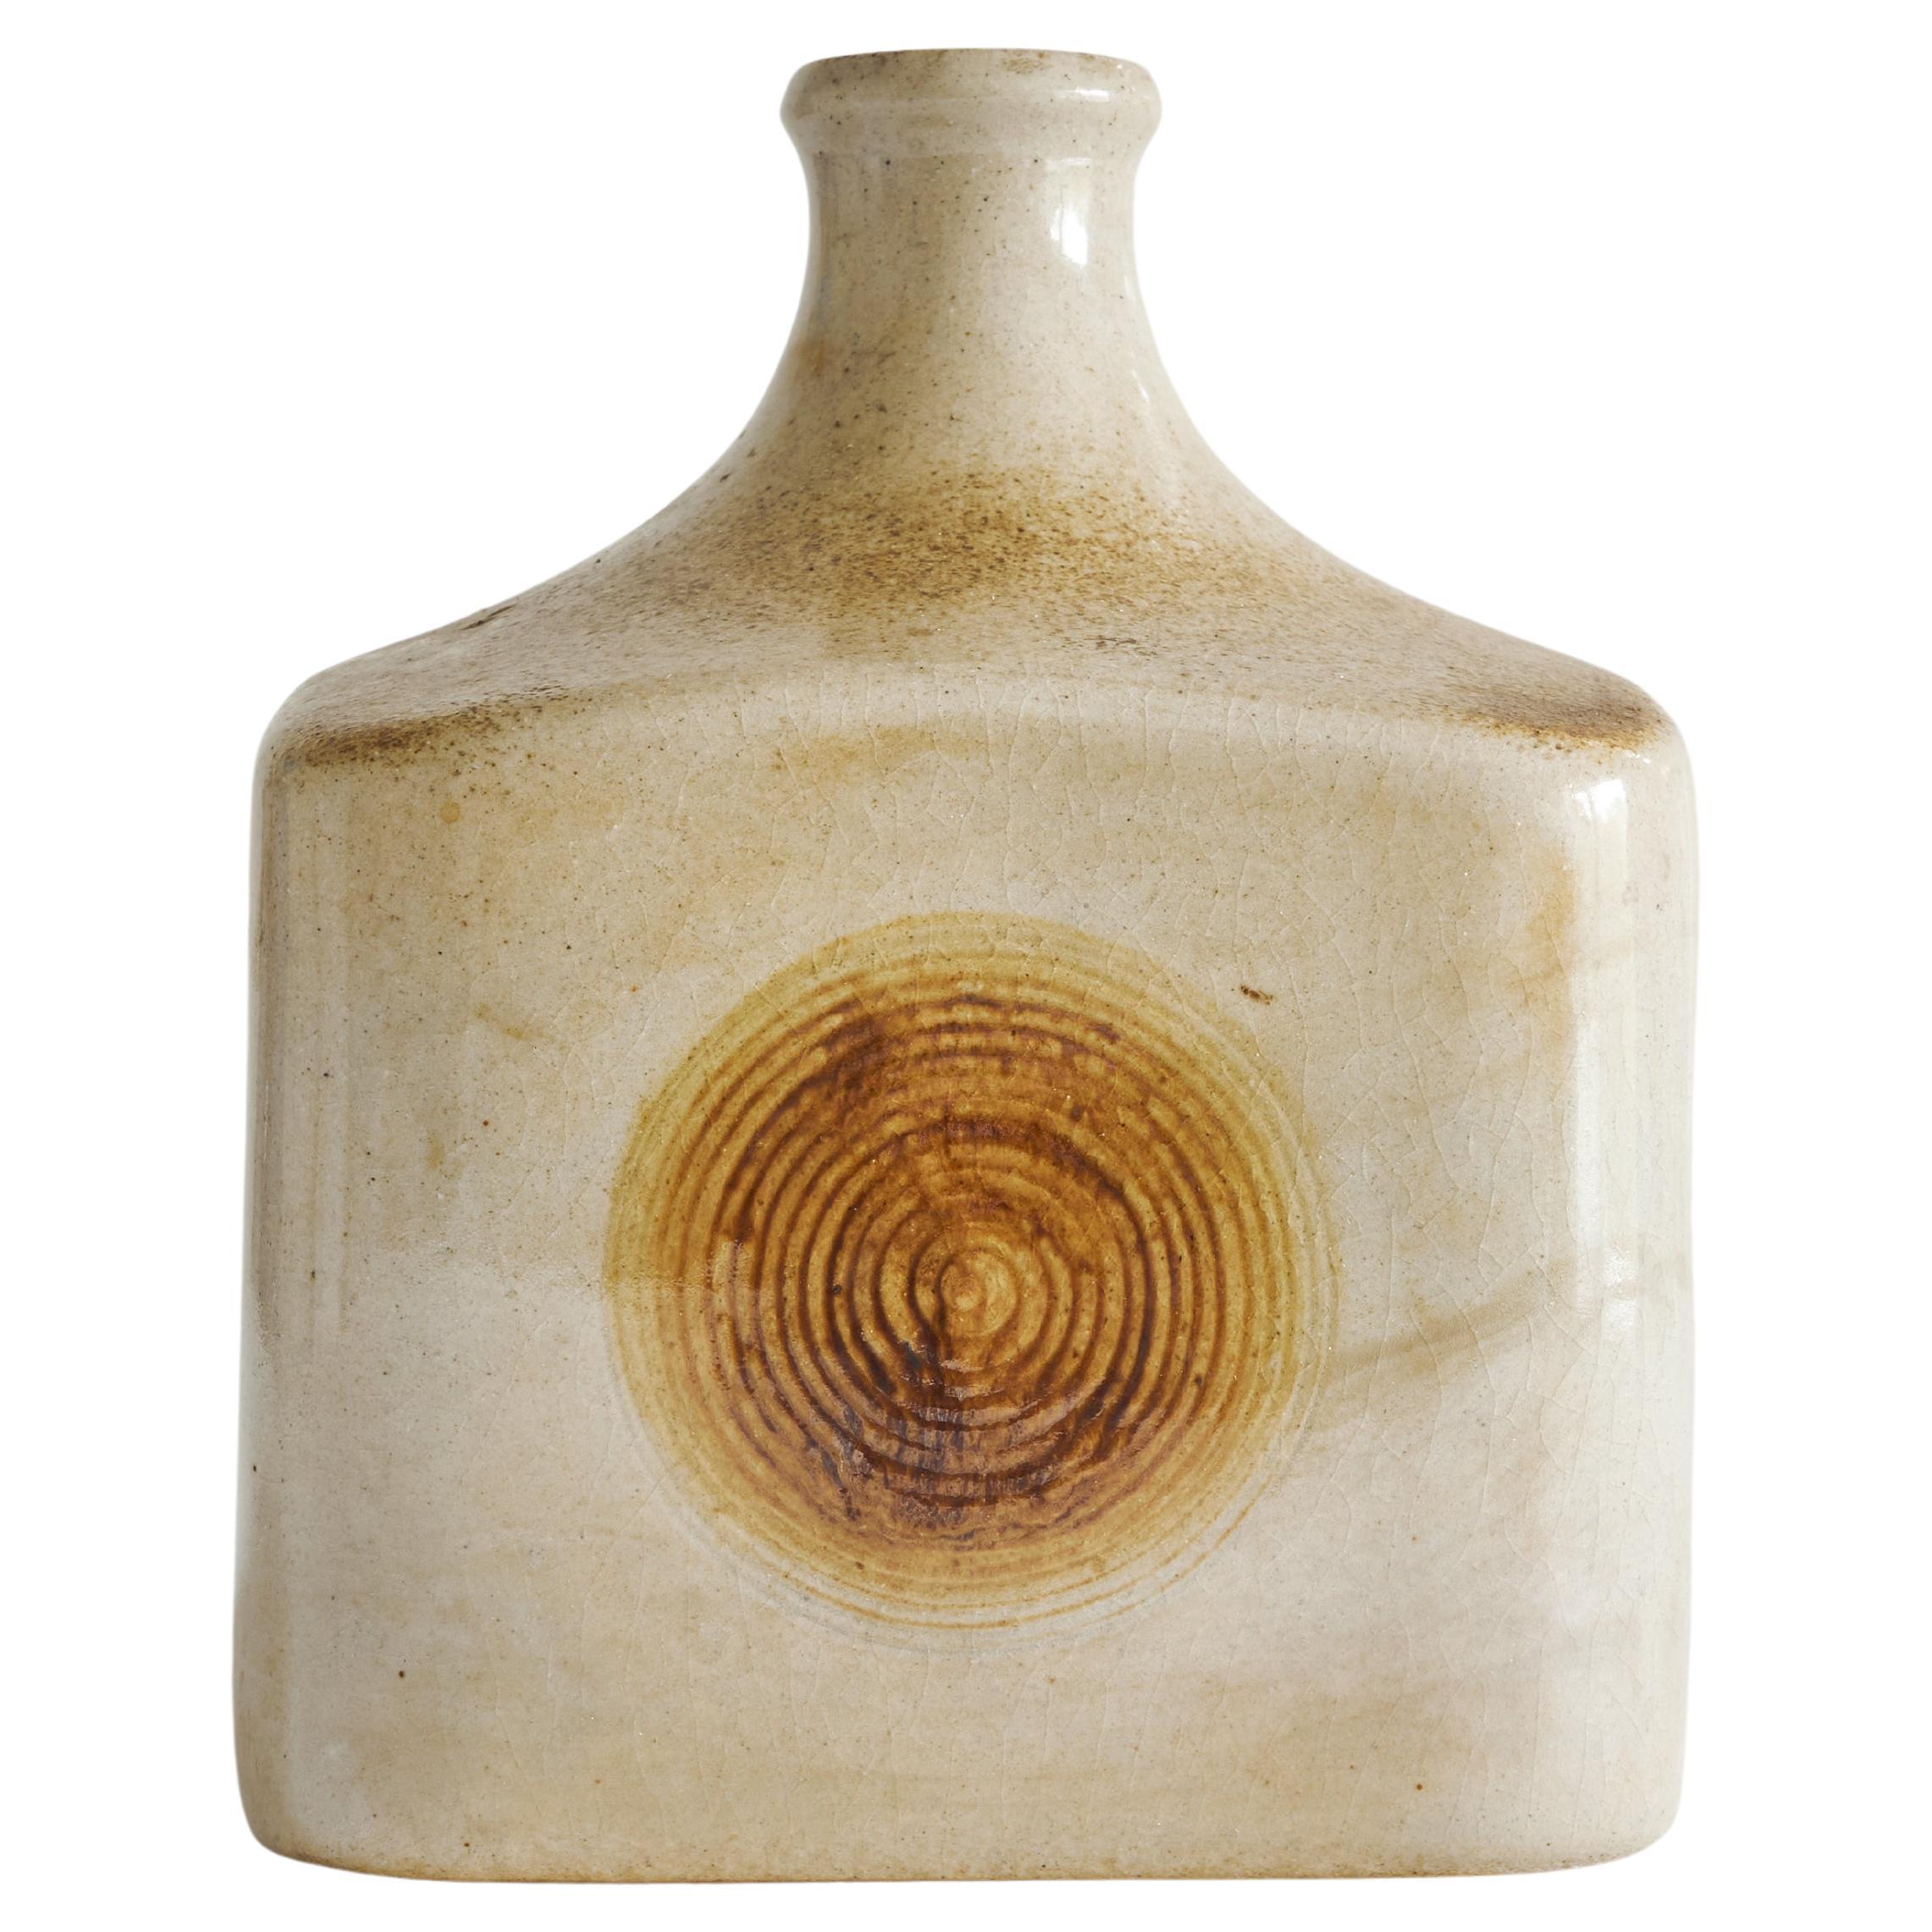 Vase du Studio Pottery 'Wood Imprint' du milieu du siècle dernier, années 1960